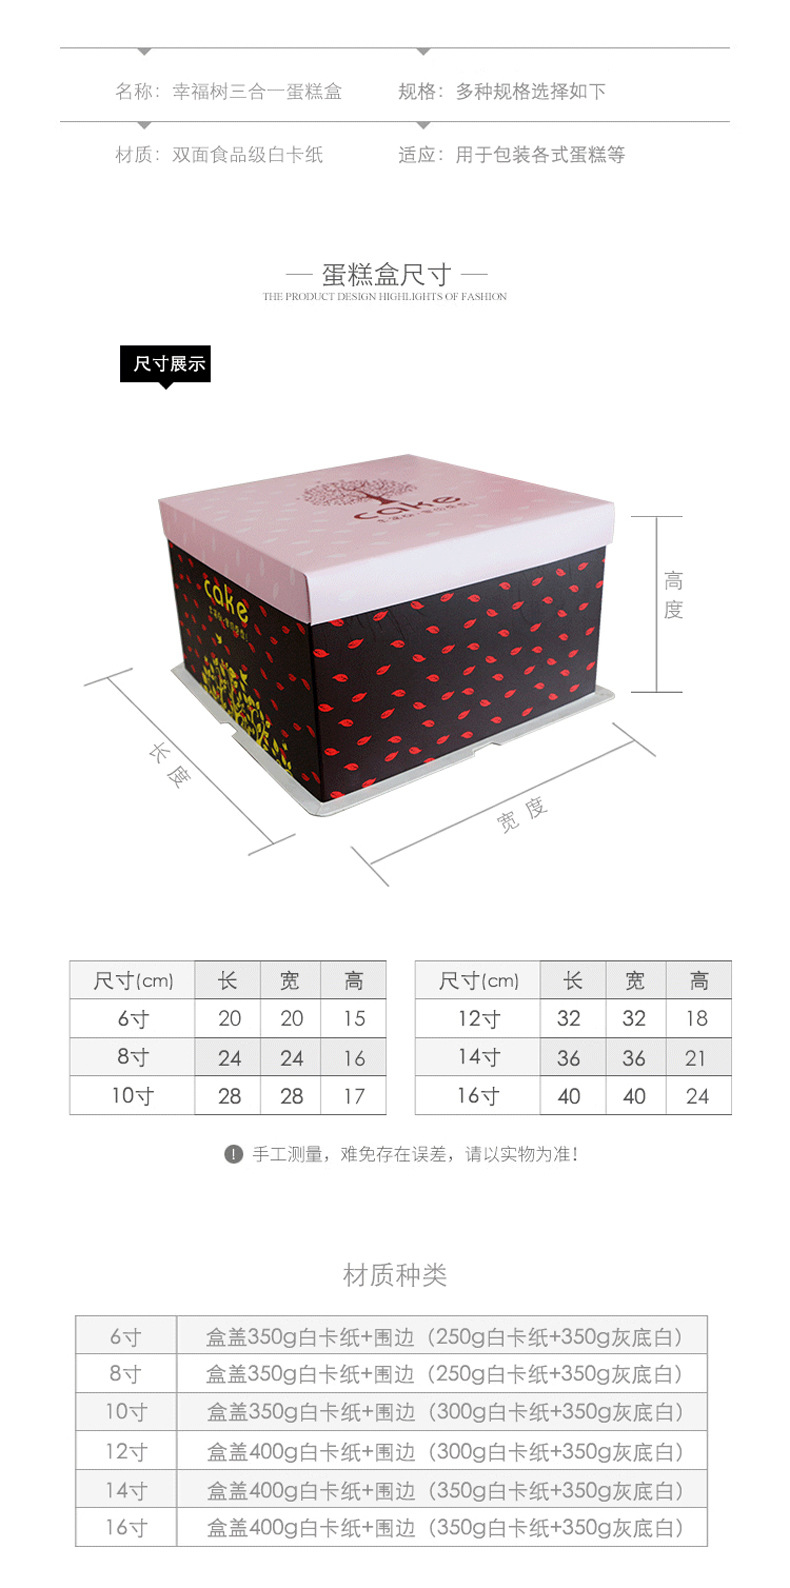 厂家热卖蛋糕盒方型三件套/可专版定制/包装盒定做烘培包装批发示例图2